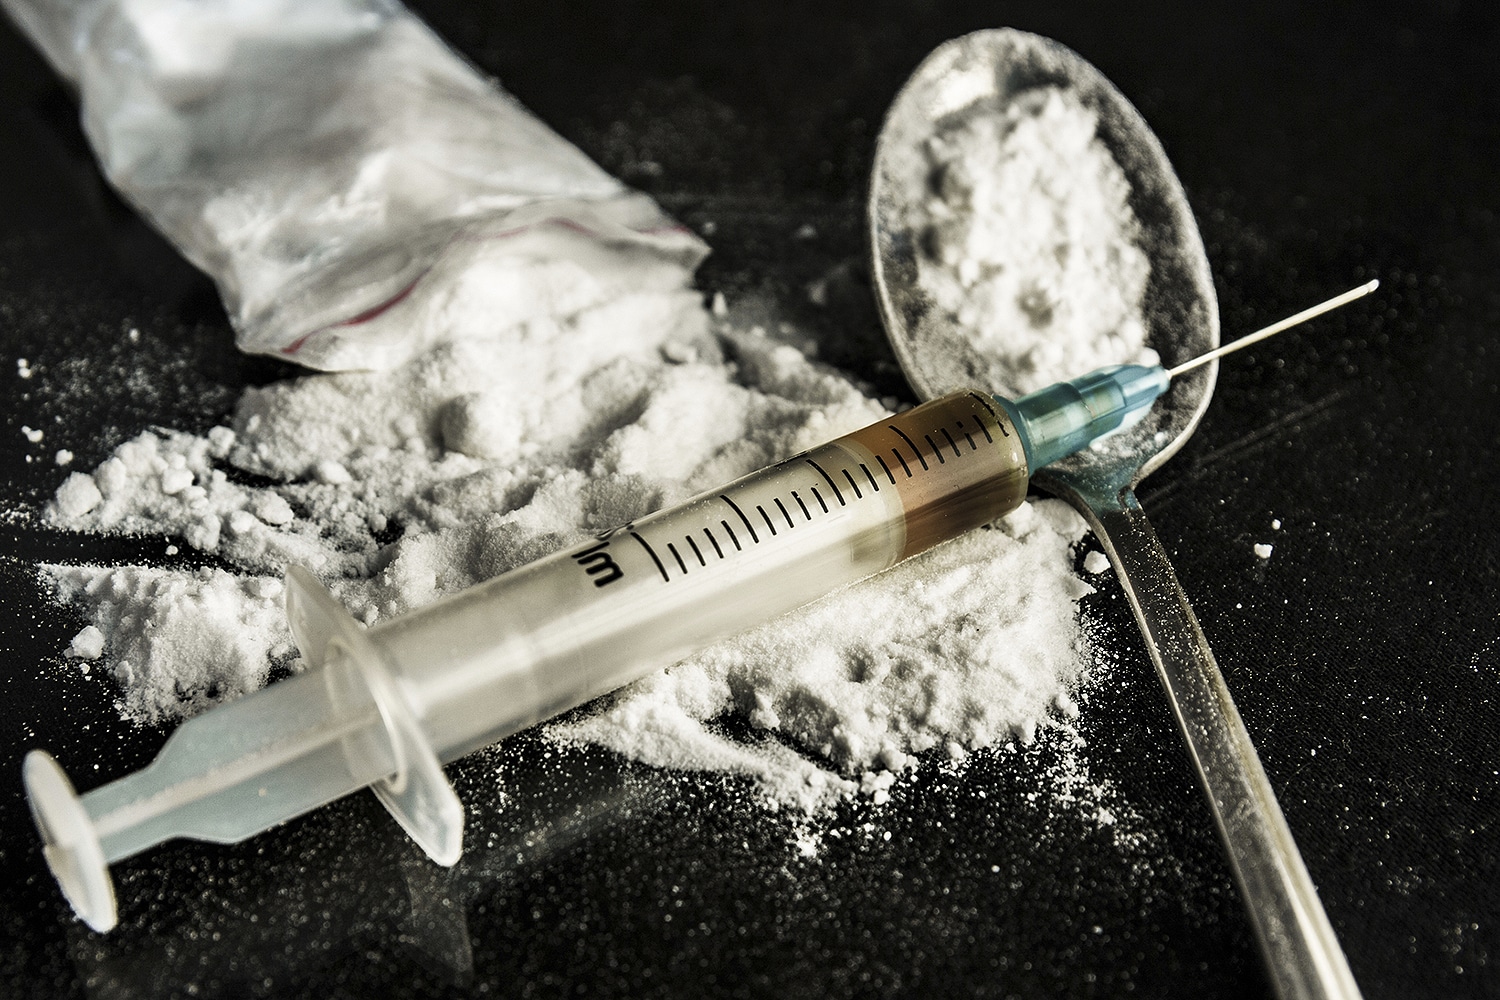 Próxima dose: Efeitos e reações da heroína no organismo